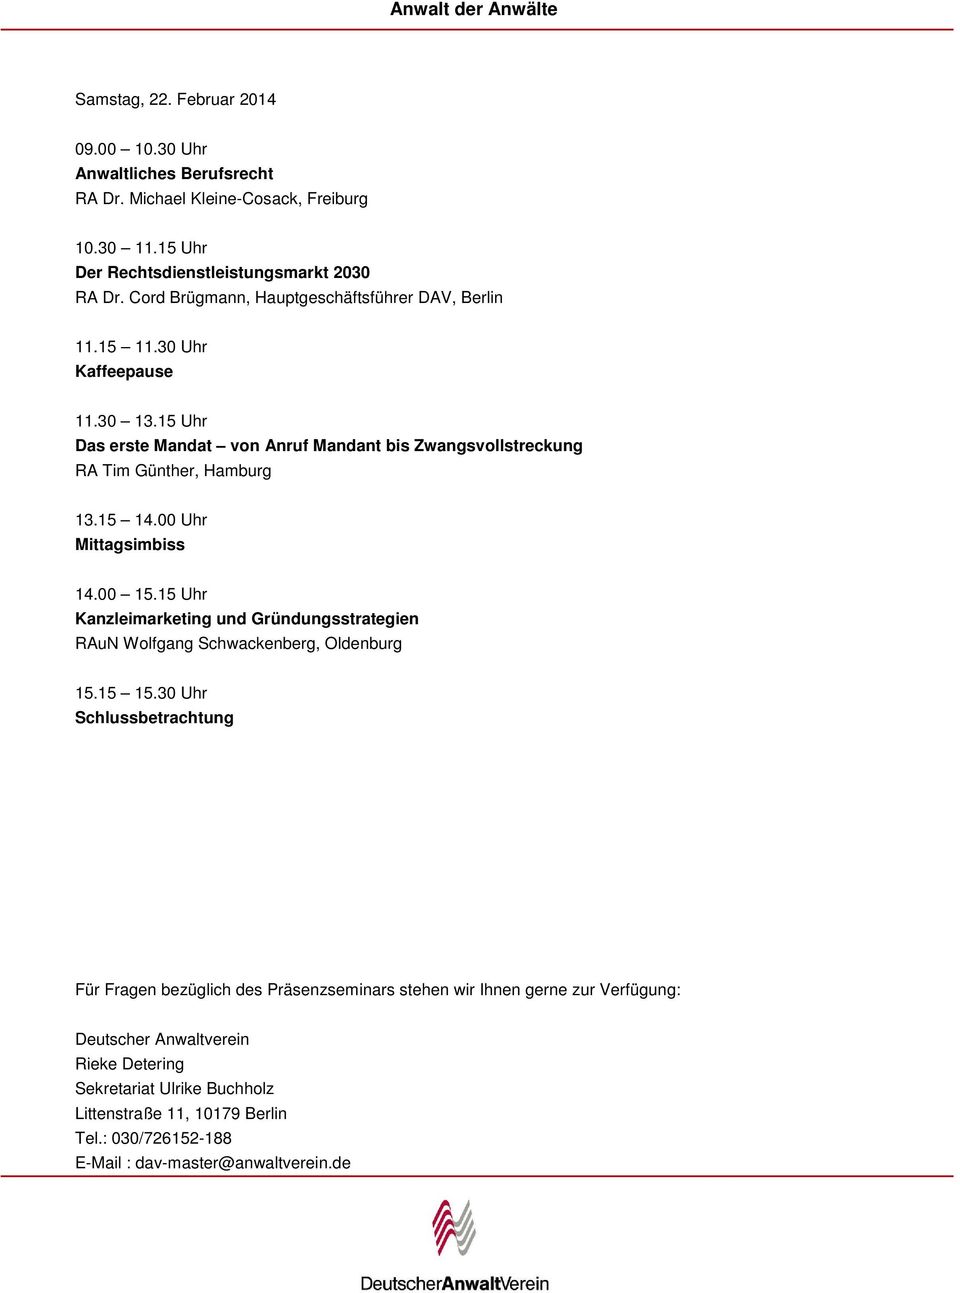 00 Uhr Mittagsimbiss 14.00 15.15 Uhr Kanzleimarketing und Gründungsstrategien RAuN Wolfgang Schwackenberg, Oldenburg 15.15 15.